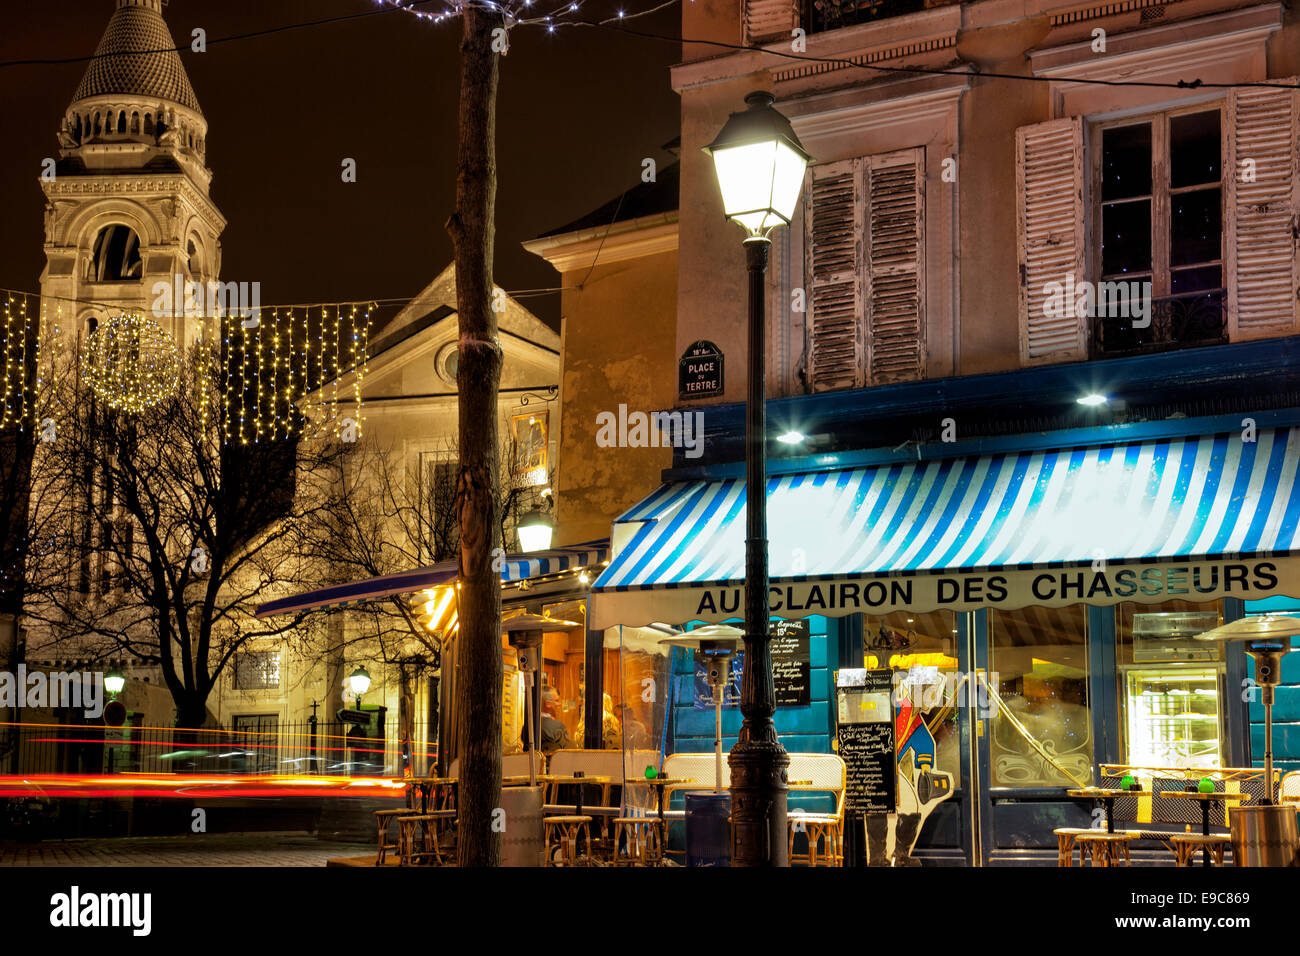 Paris, France - December 22, 2013: Cafe Au Clairon des Chausseurs in the Montparnasse Quarter.Christmas illumination. Stock Photo